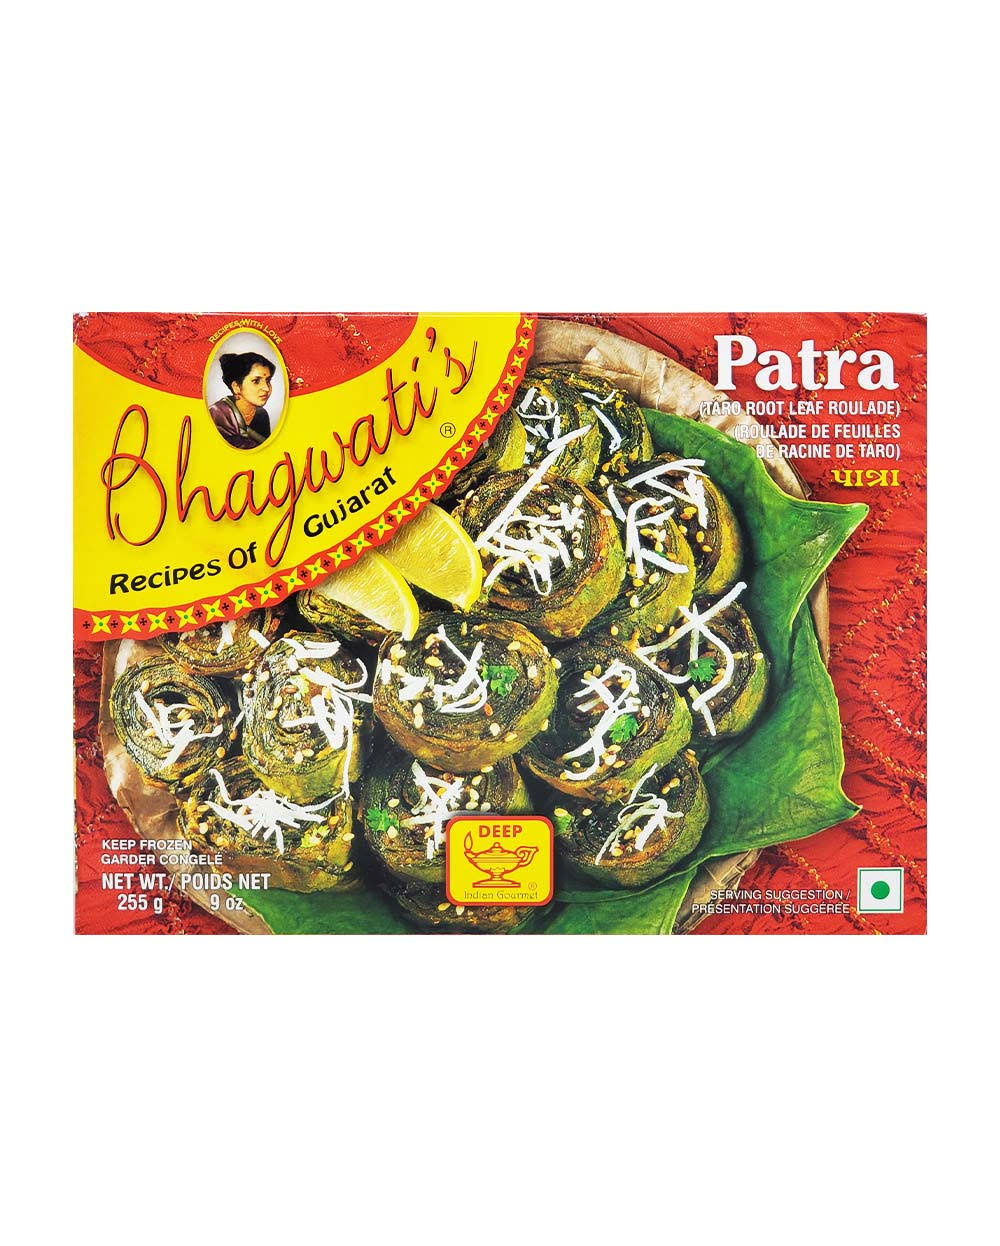 Bhagwati's Recipes of Gujarat Patra - 9 oz